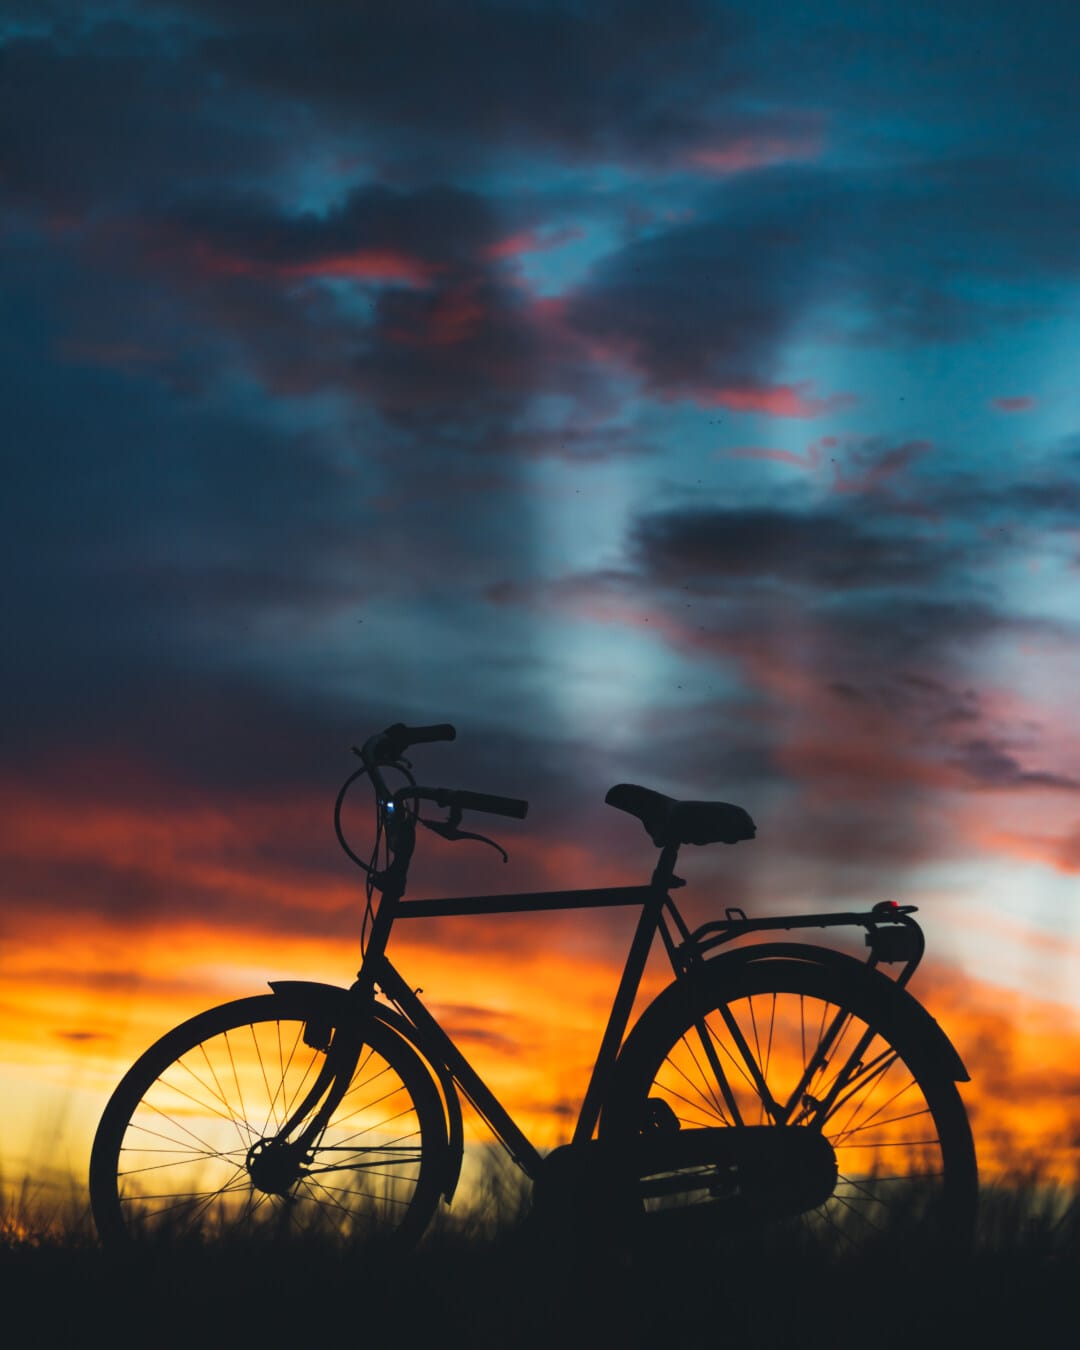 sylwetka, rowerów, Podświetlany, majestatyczny, atmosfera, Zmierzch, wieczór, idylliczne, zachód słońca, zmierzch